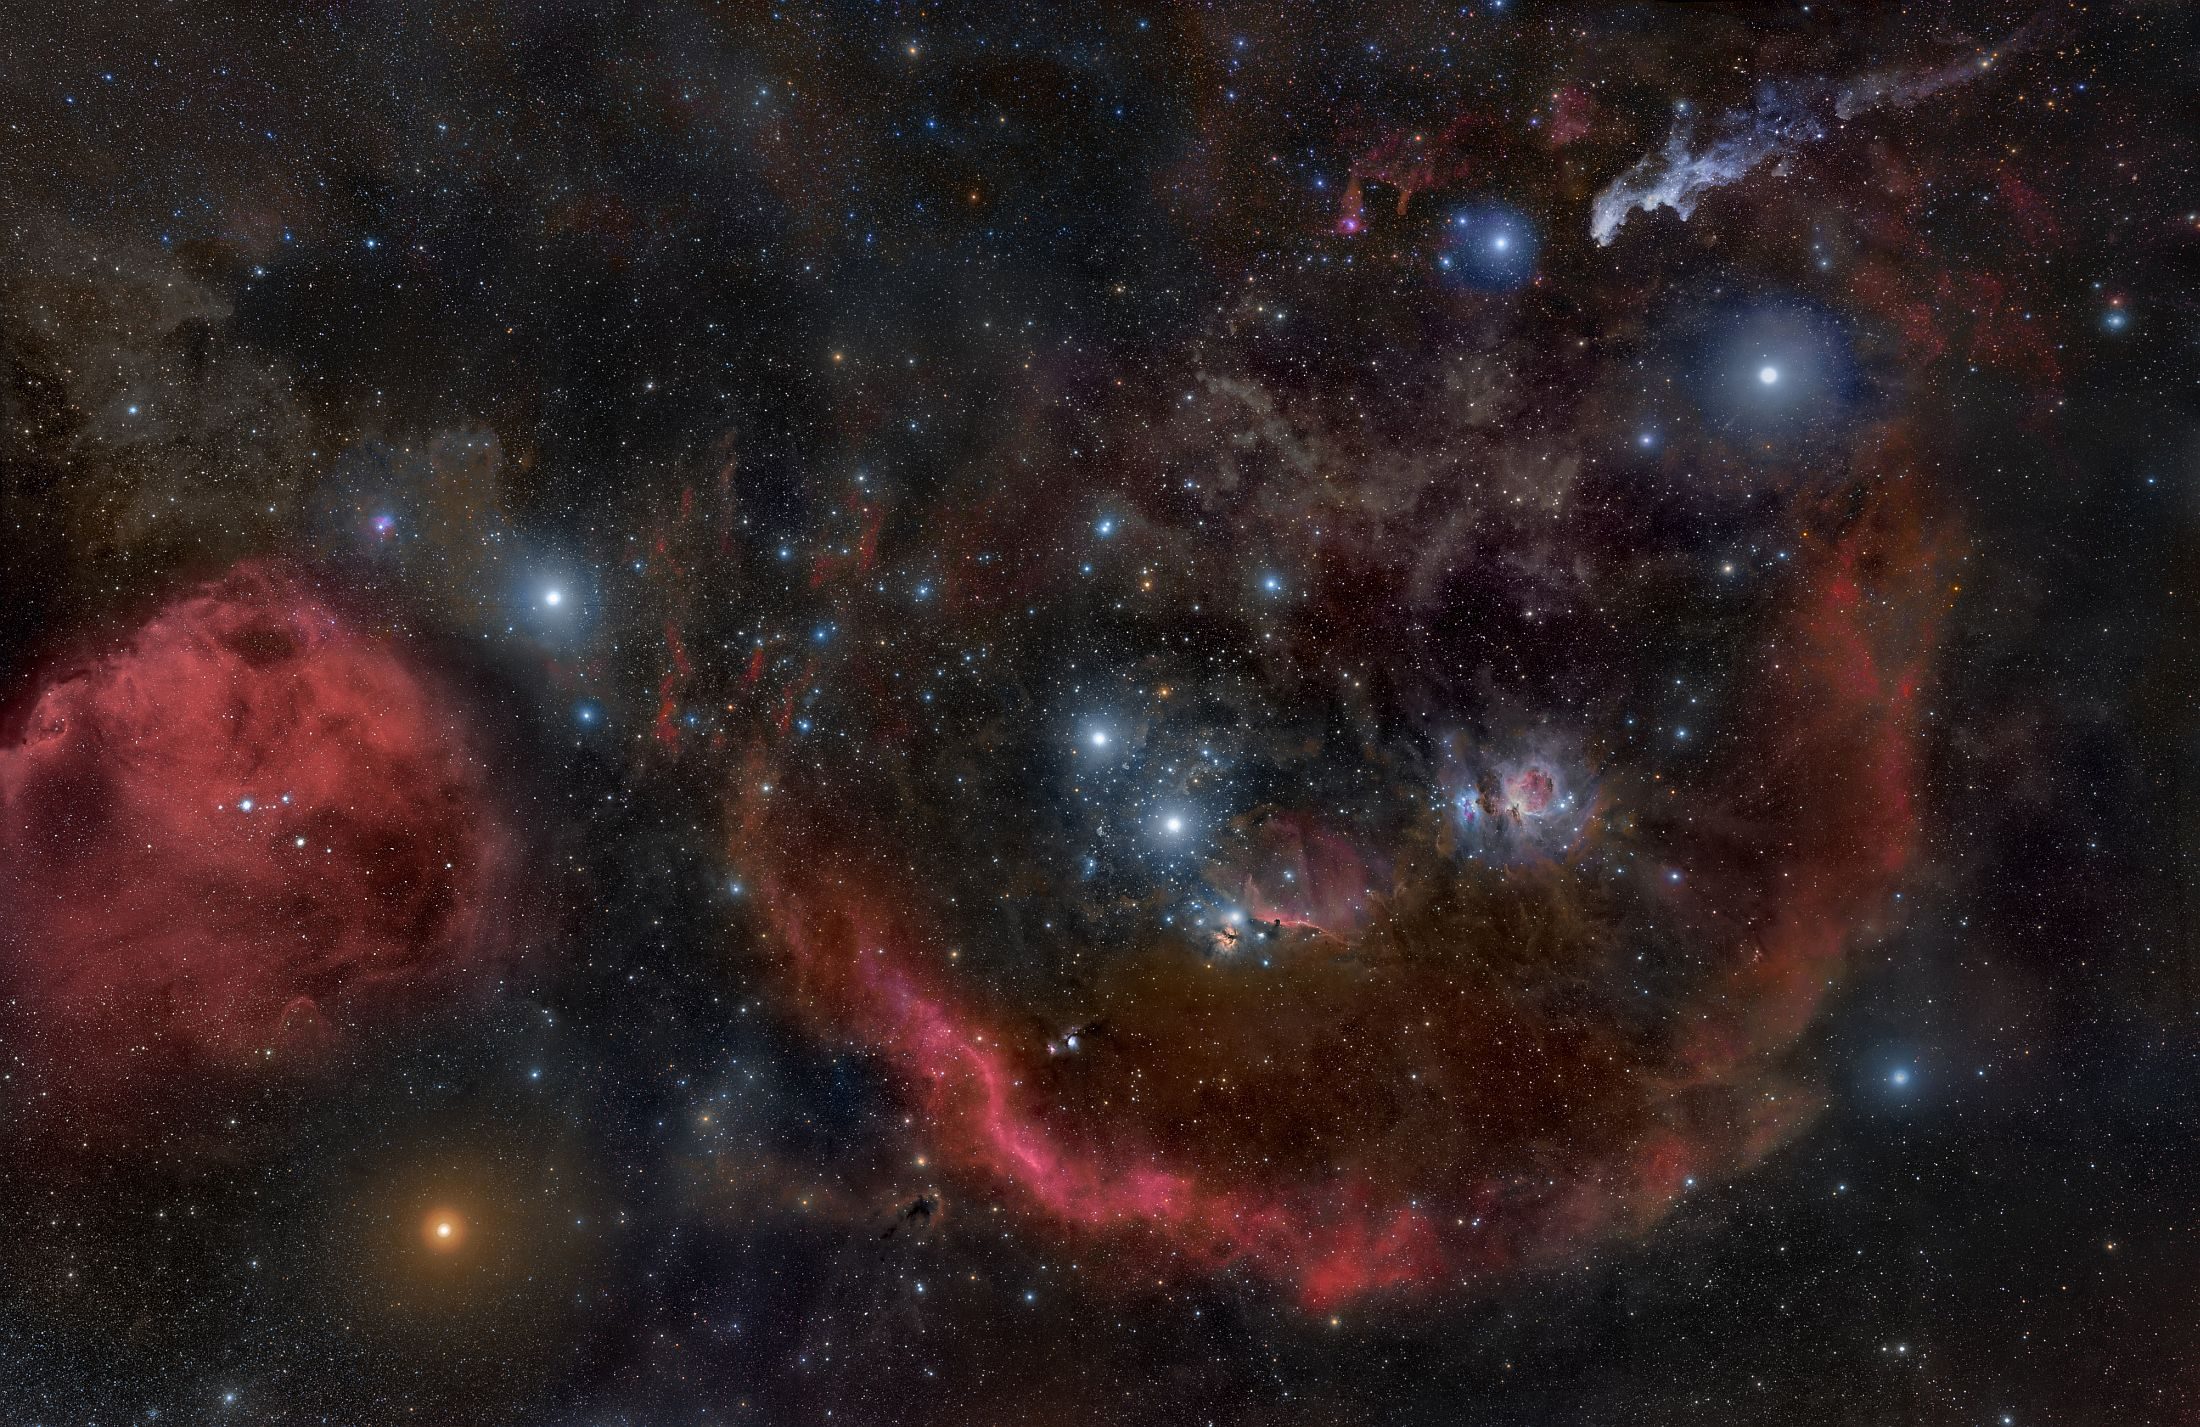 Panorama du voisinage de la nébuleuse d'Orion, assemblé à partir de 32 images